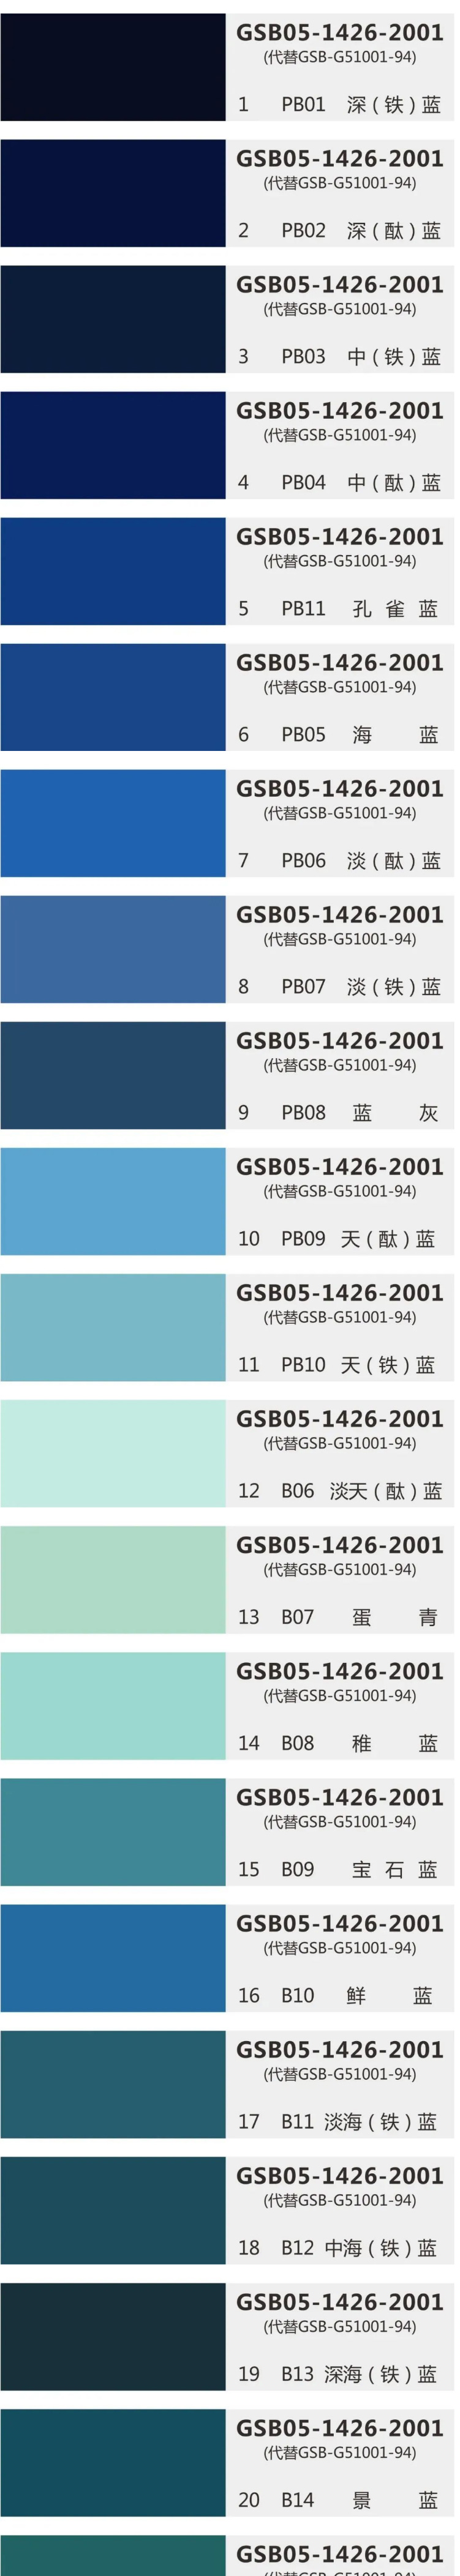 环氧地坪国标色卡GSB05-1426-2001（83色完整版）—电子收藏版_01.jpg